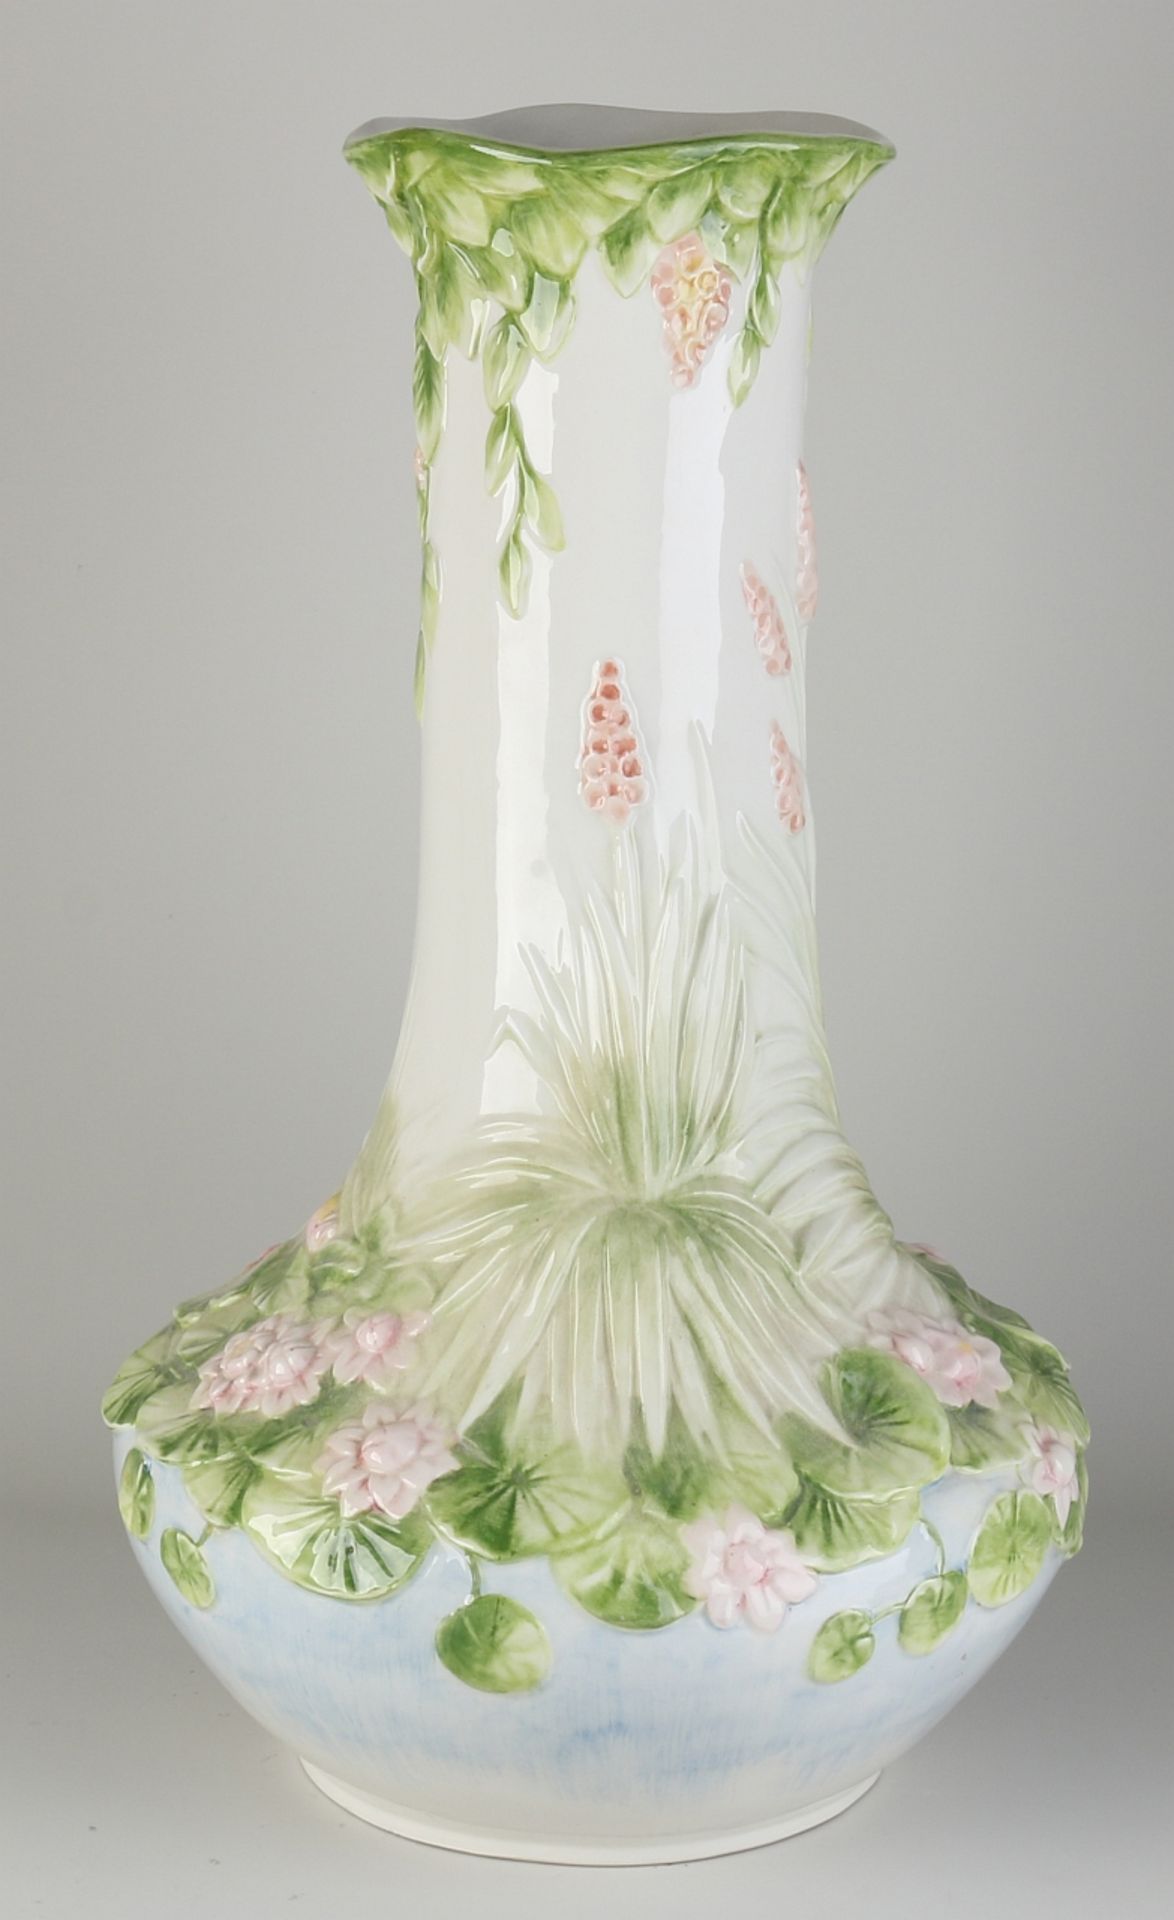 Italian Art Nouveau style vase - Image 2 of 3